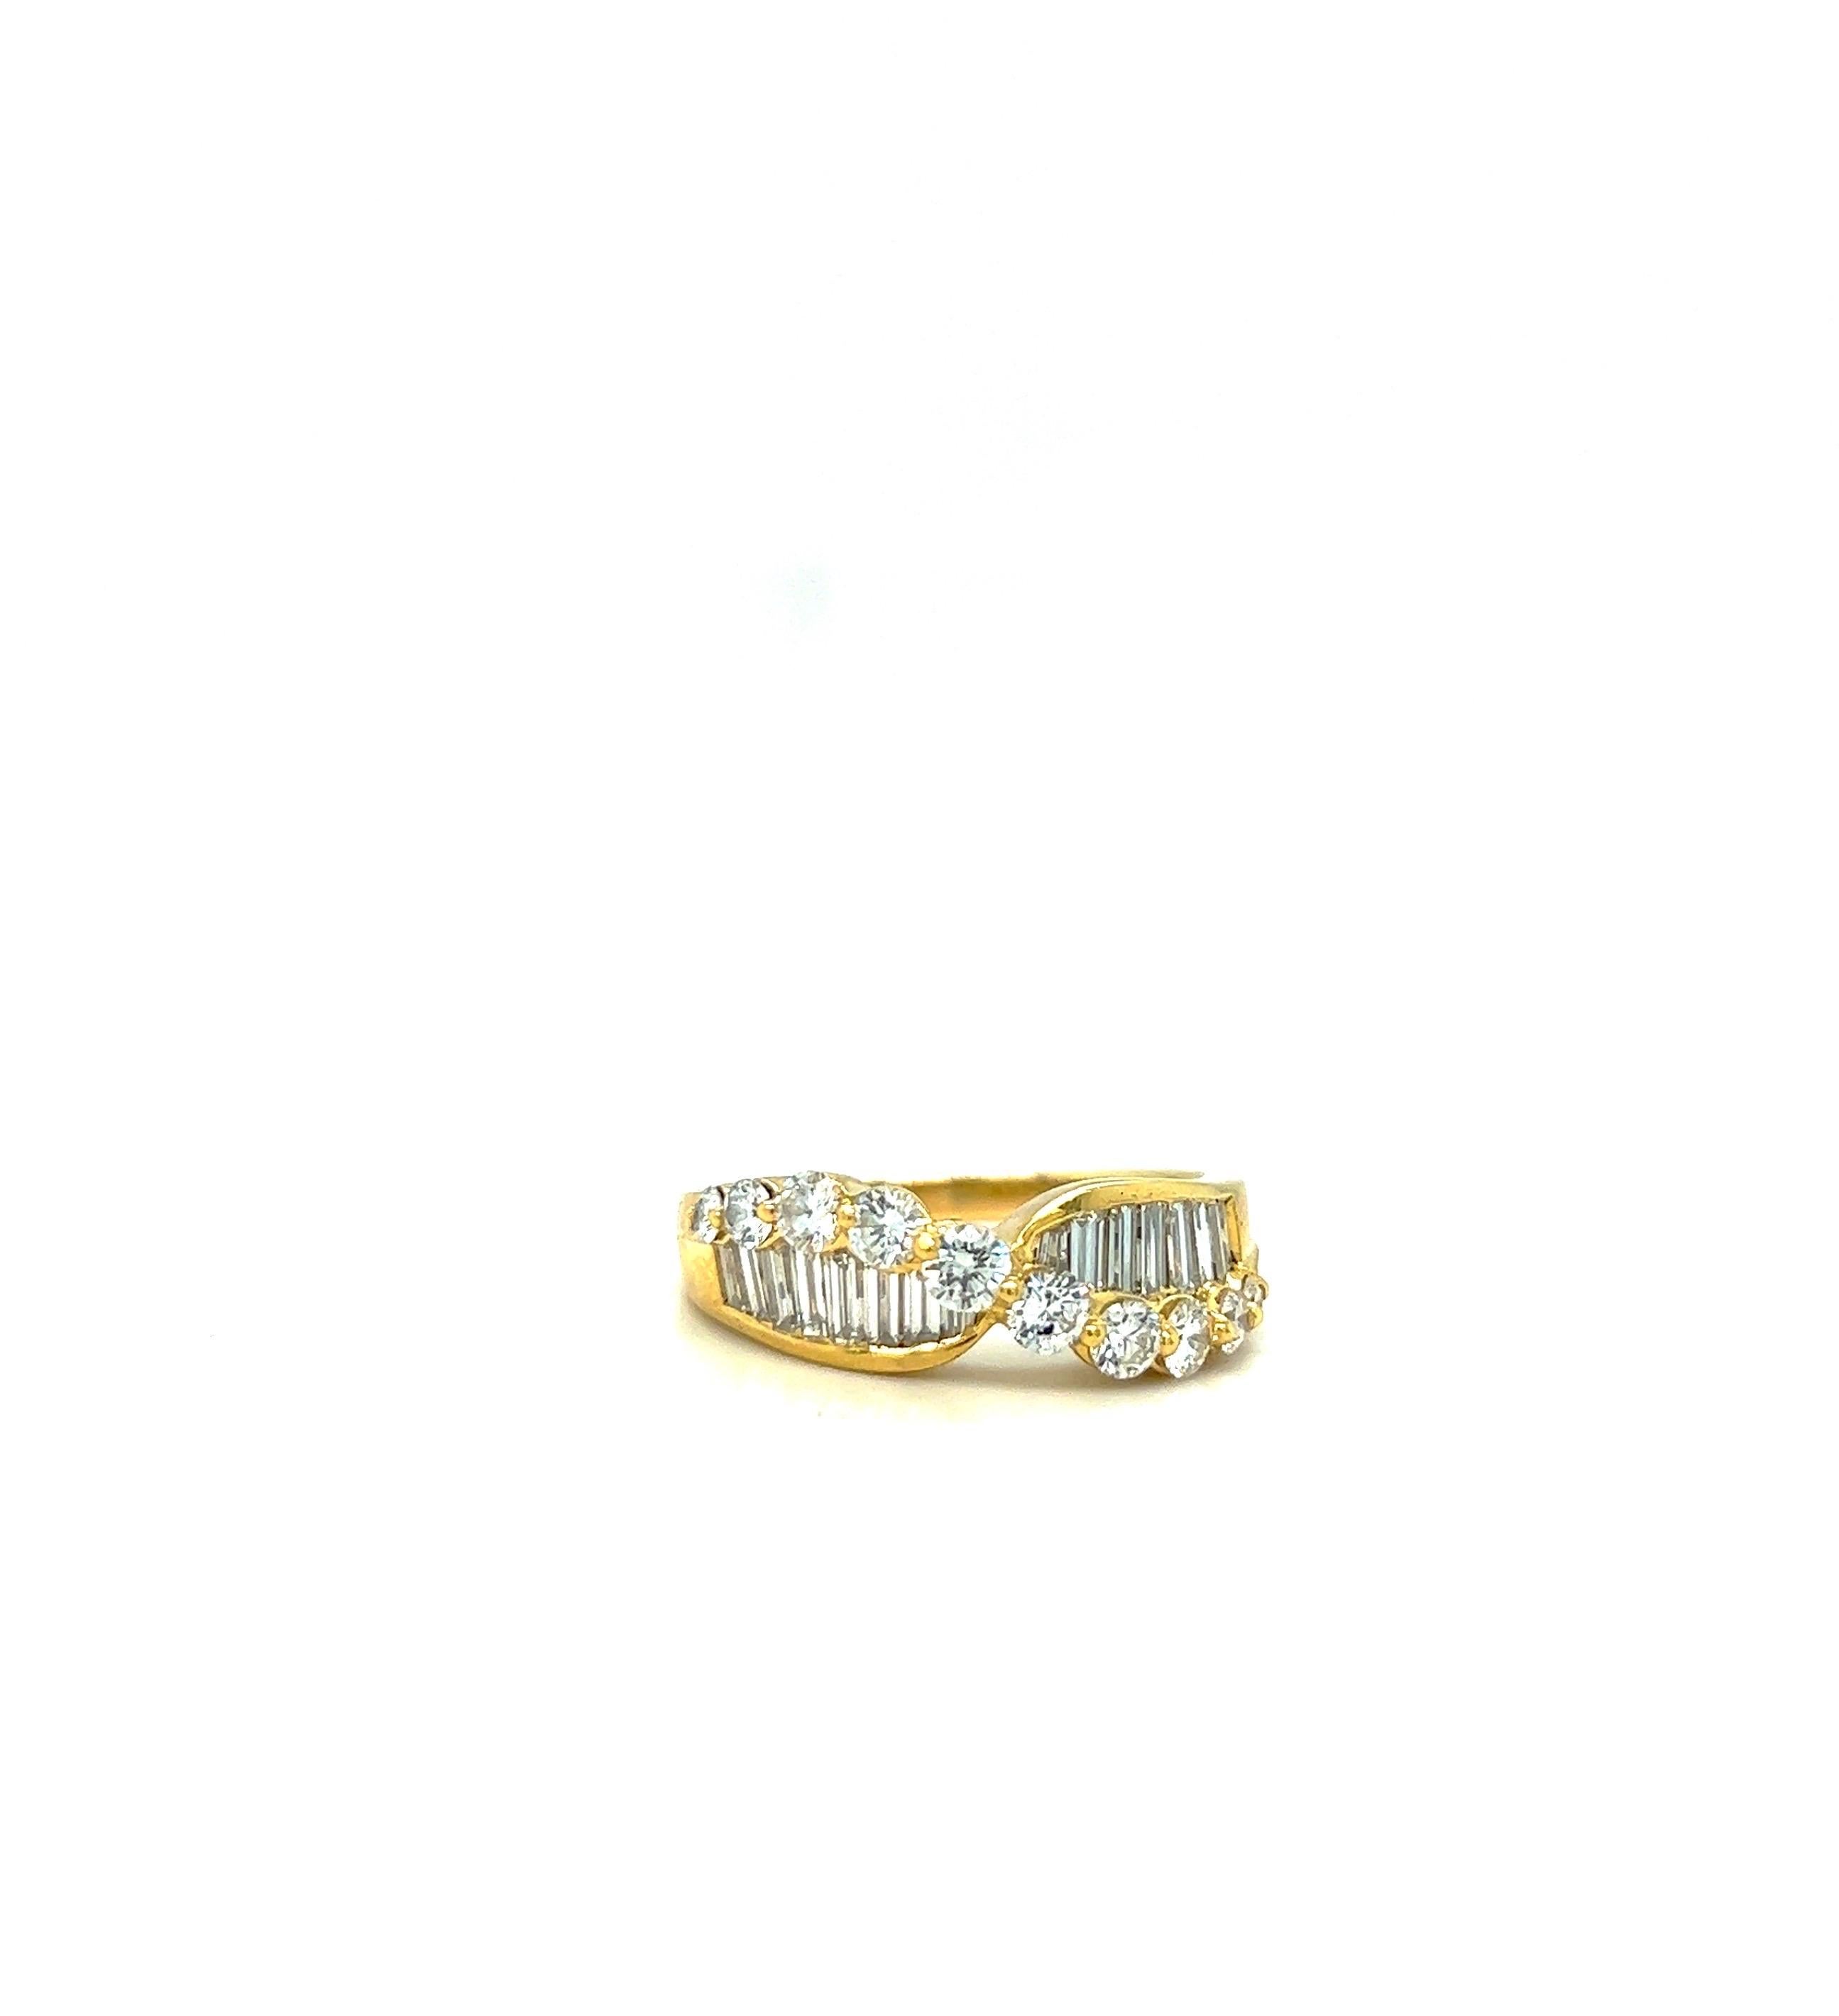 Schöner Ring aus 18 Karat Gelbgold, besetzt mit Baguette- und runden Diamanten. Die Baguette-Diamanten sind vertikal gefasst, während die runden Brillanten in Zackenfassung sich anmutig von Ost nach West wölben. Ein runder Diamant ist in einer